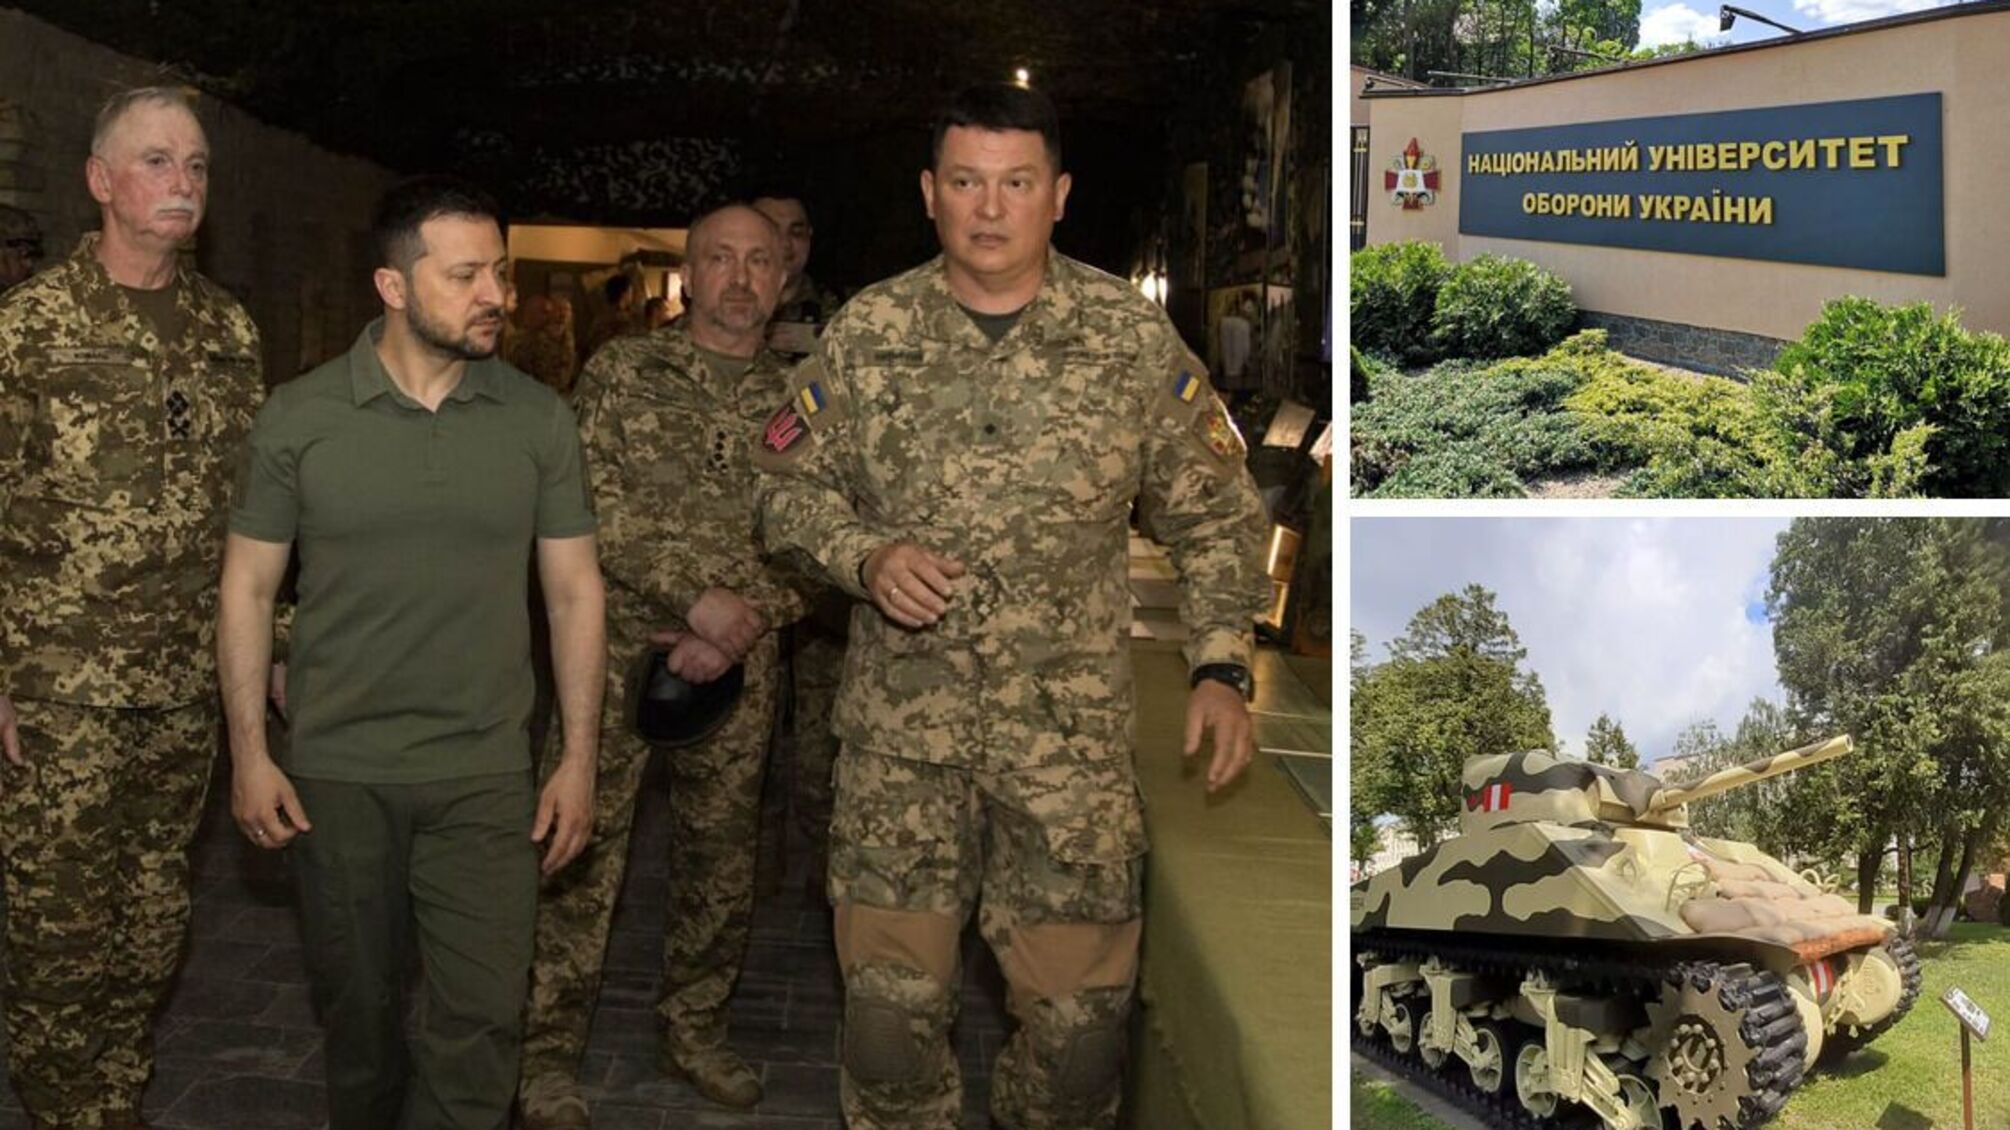 На территории Нацуниверситета обороны в Киеве действует военно-исторический музей, посетивший Владимир Зеленский